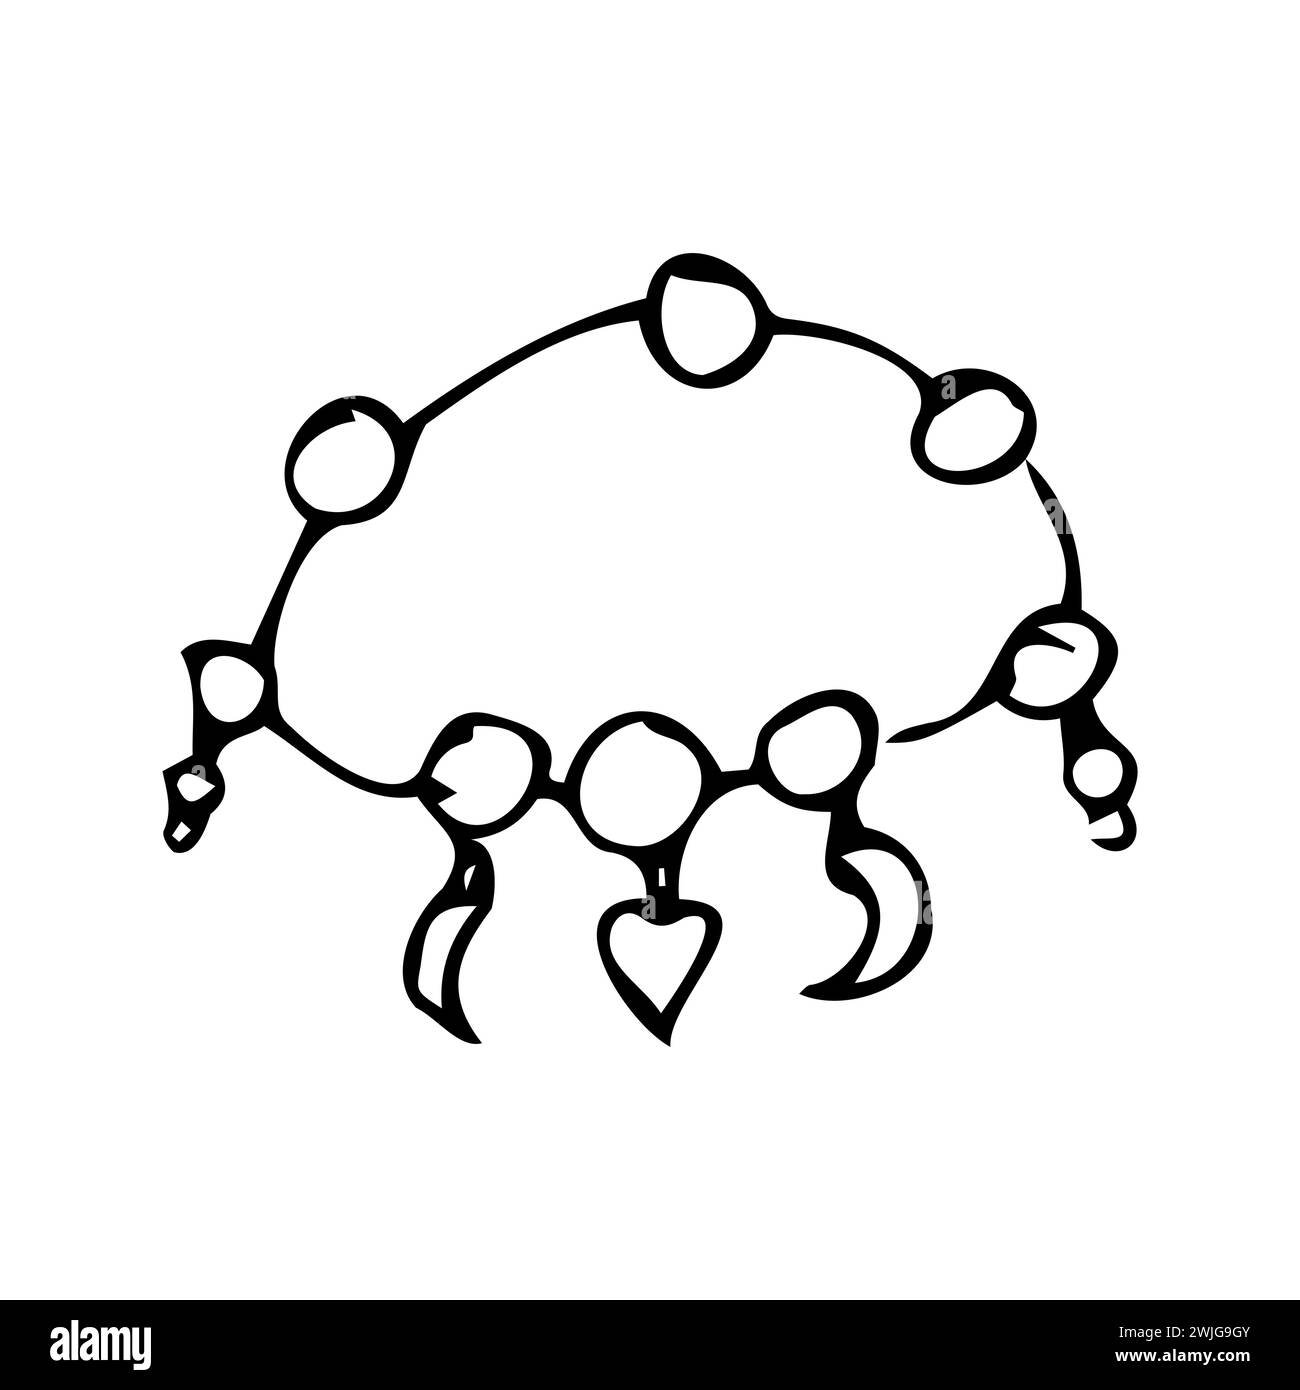 outline doodle bracelet of girl jewerly for friendship. Vector illustration outline sketch. Hand drawn jewerly illustration.  Stock Vector